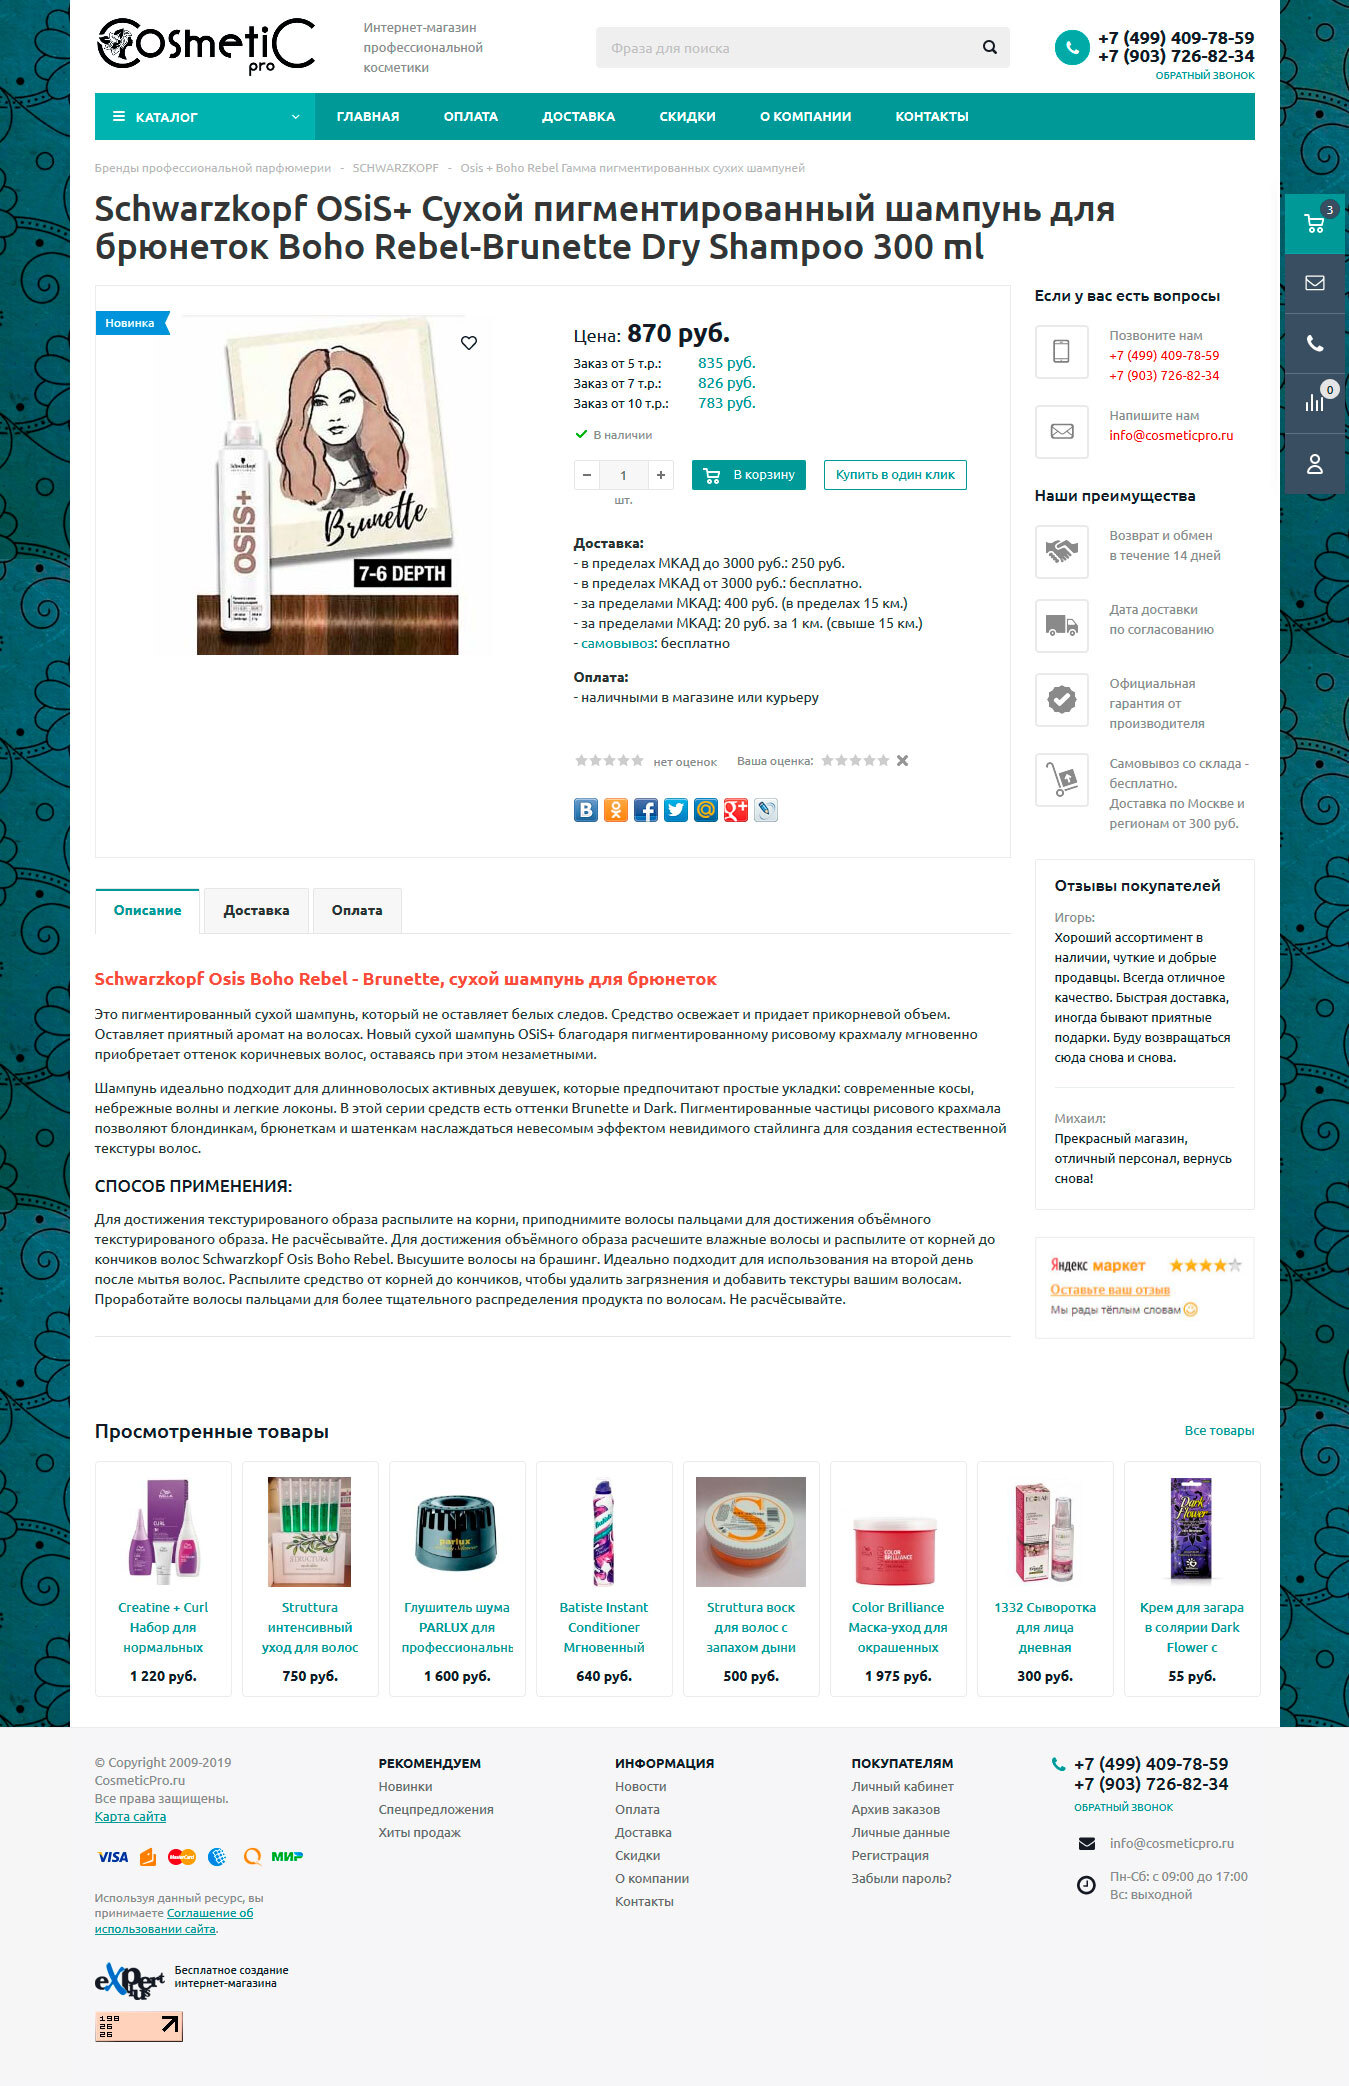 Интернет-магазин профессиональной косметики "CosmeticPro"